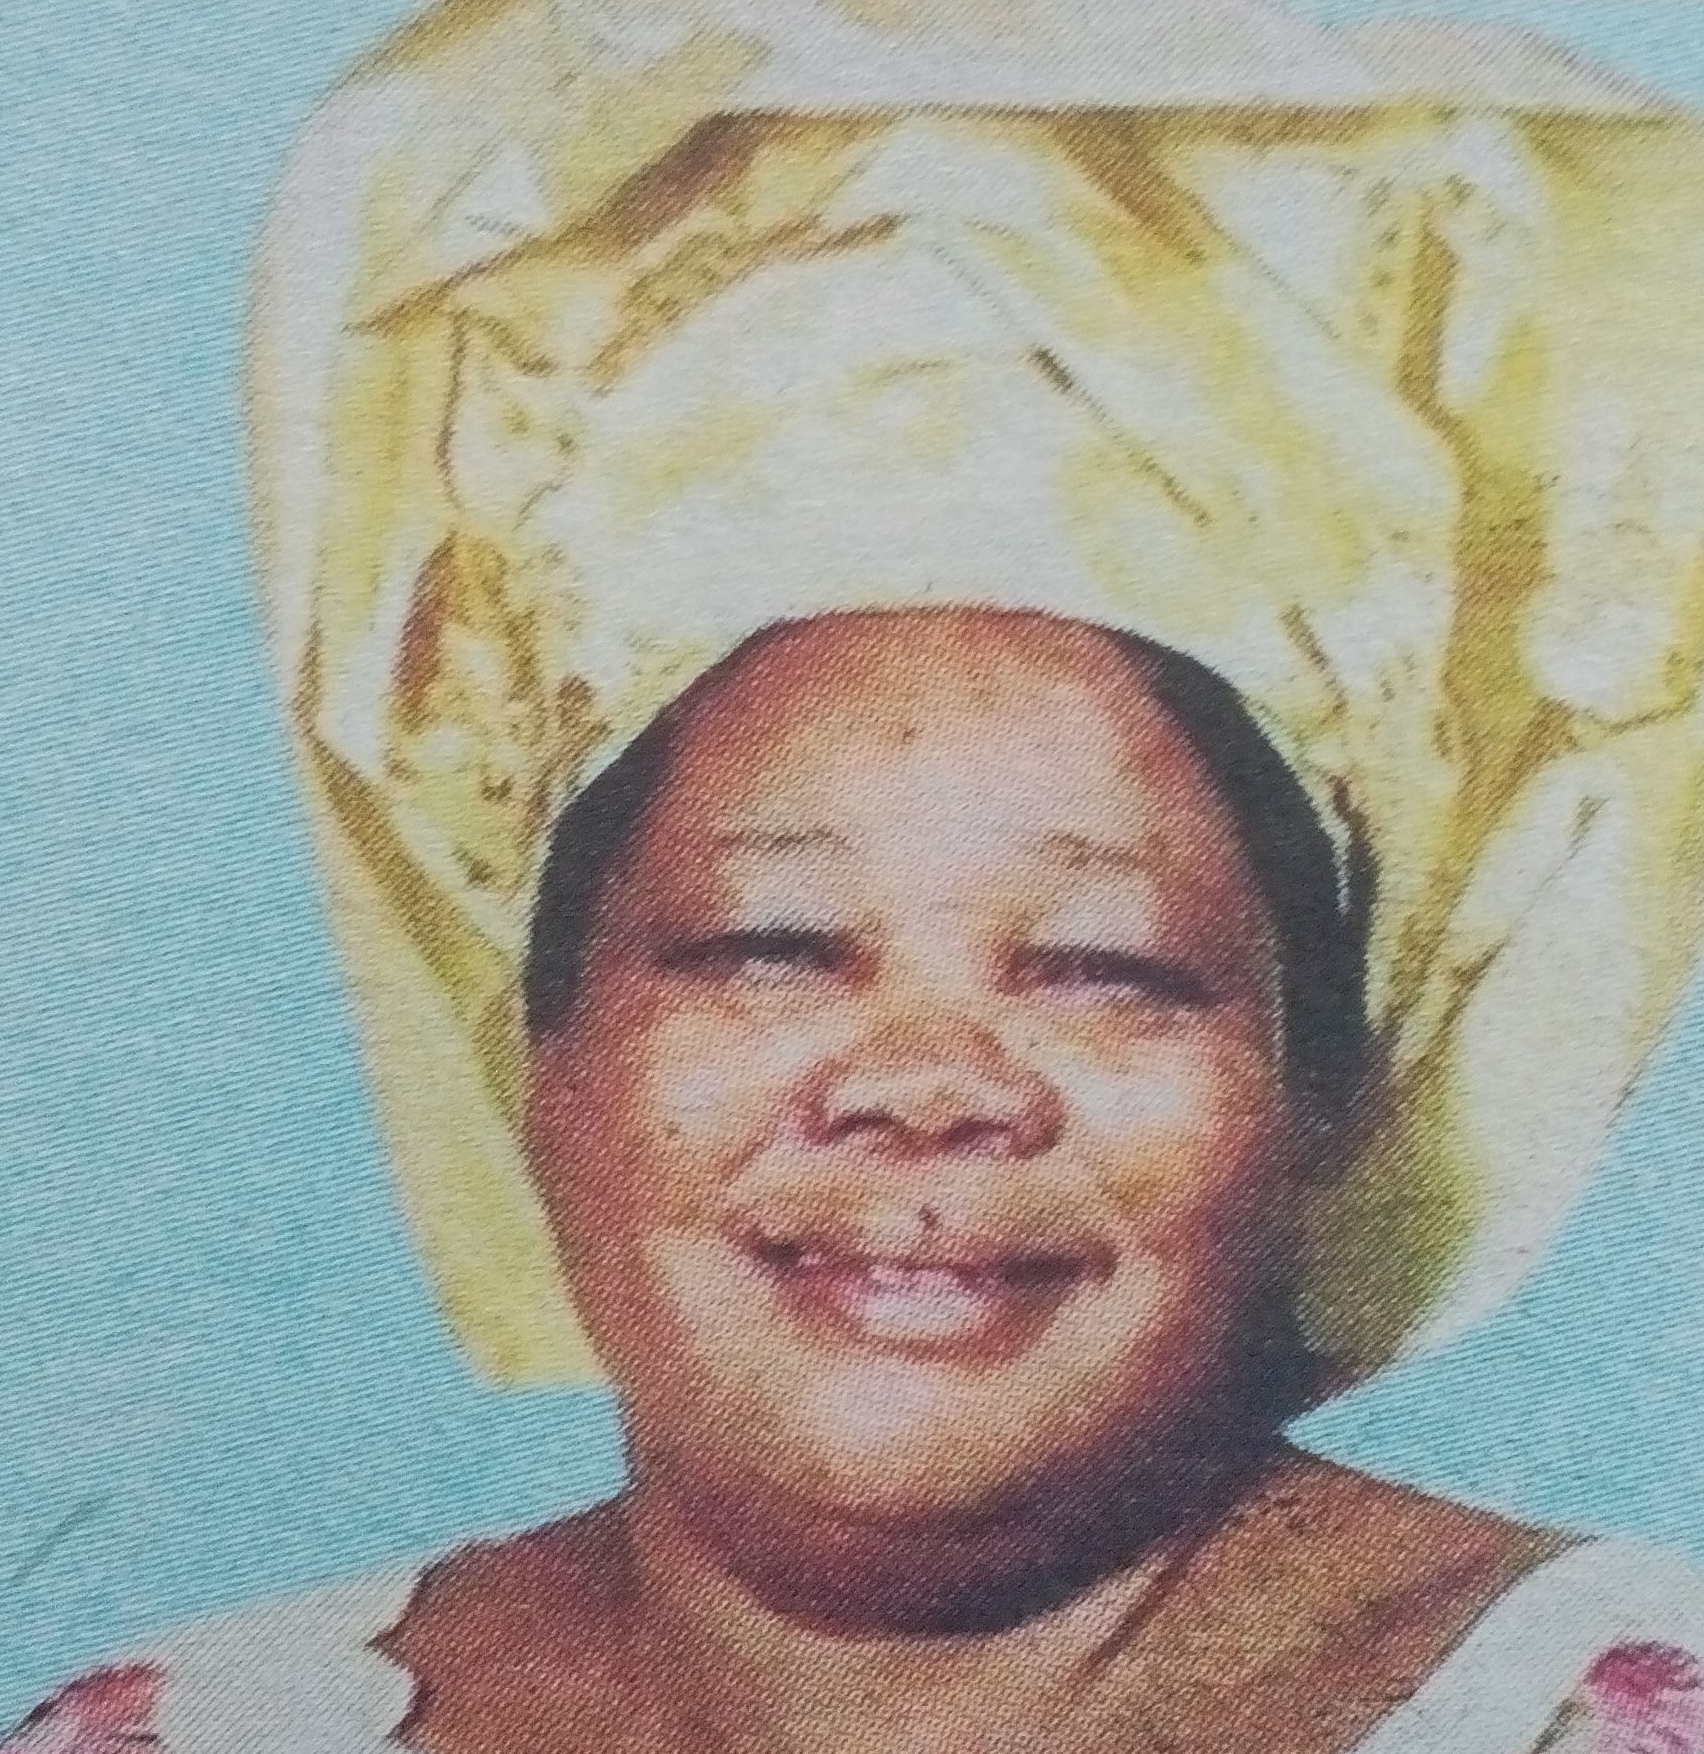 Obituary Image of Concilata Onoka Malawi